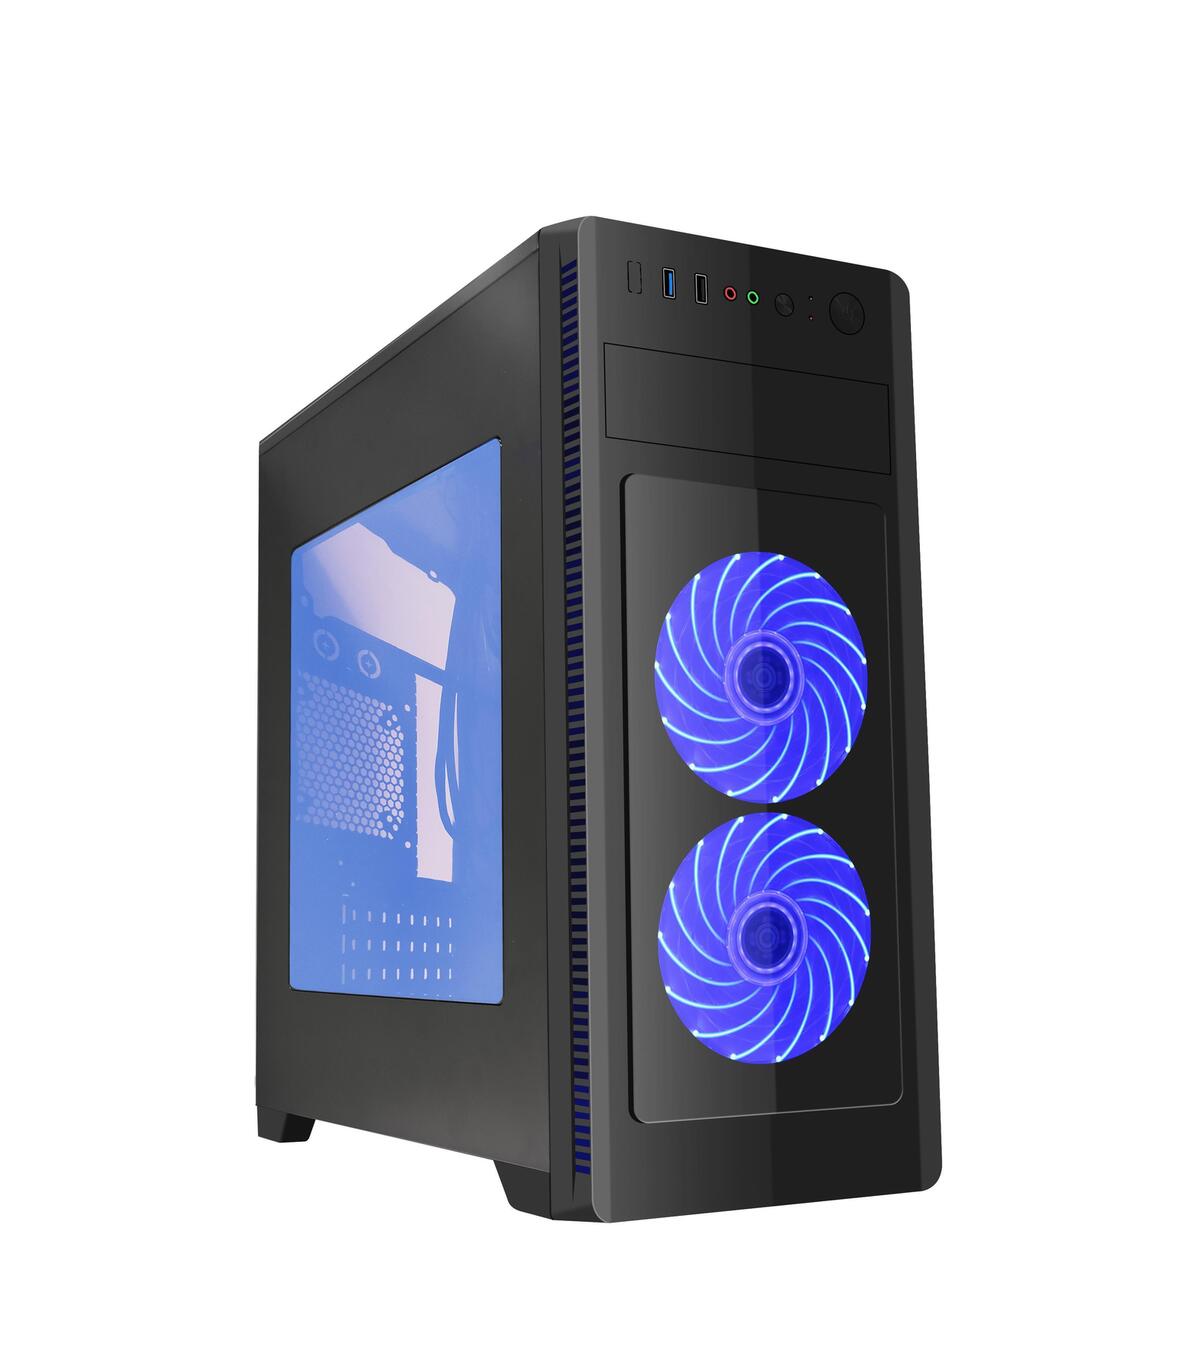 GEMBIRD CAJA PC ATX FORNAX 1000B - BLUE LED FANS, USB 3.0